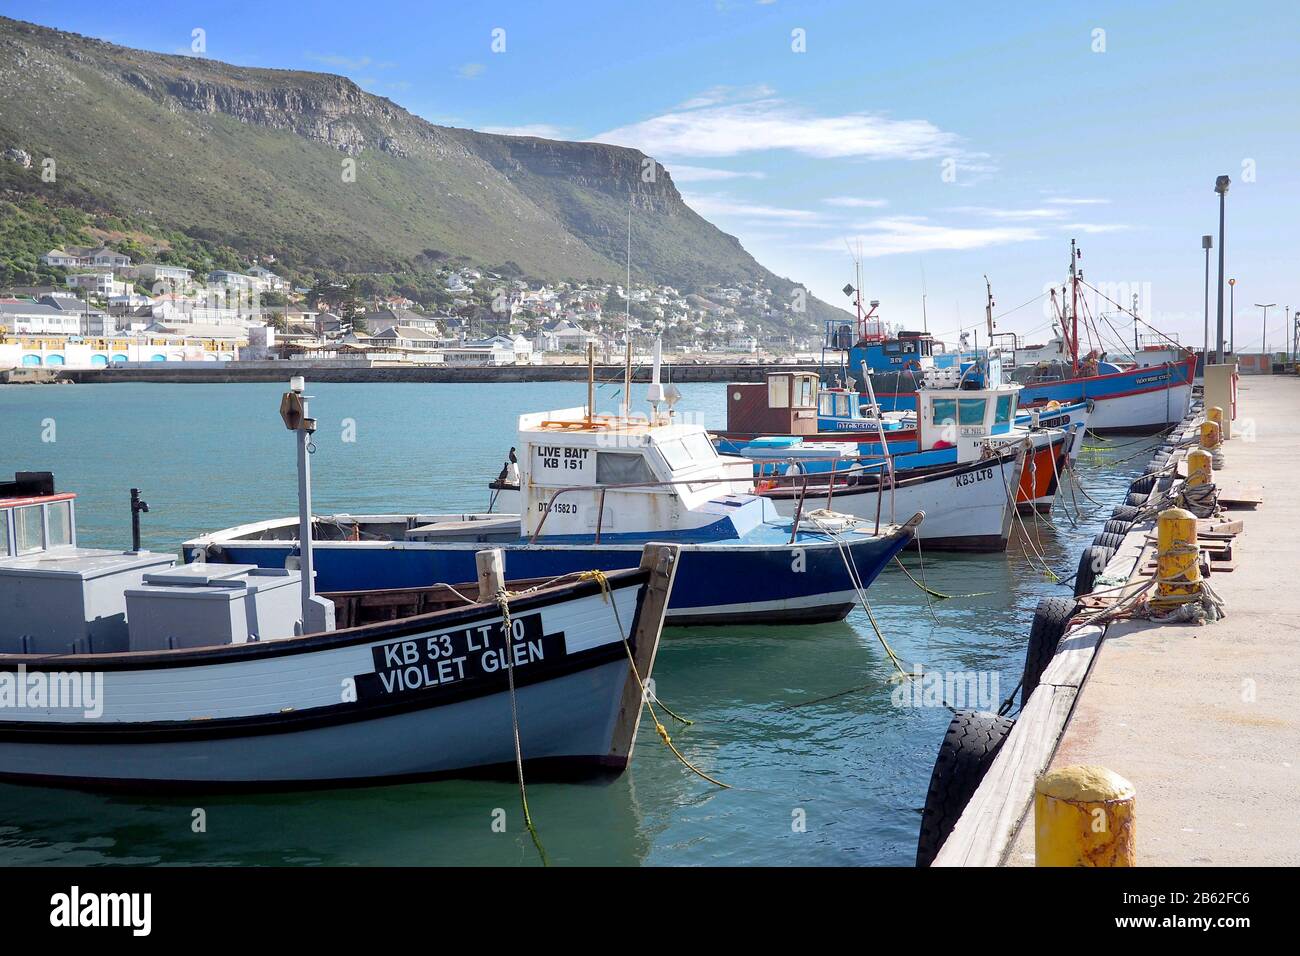 Puerto de Kalk Bay, Ciudad del Cabo, Sudáfrica - 16 de mayo de 2019 : los barcos de pesca tradicionales de madera están amarrados en un pequeño puerto de Ciudad del Cabo, Sudáfrica Foto de stock